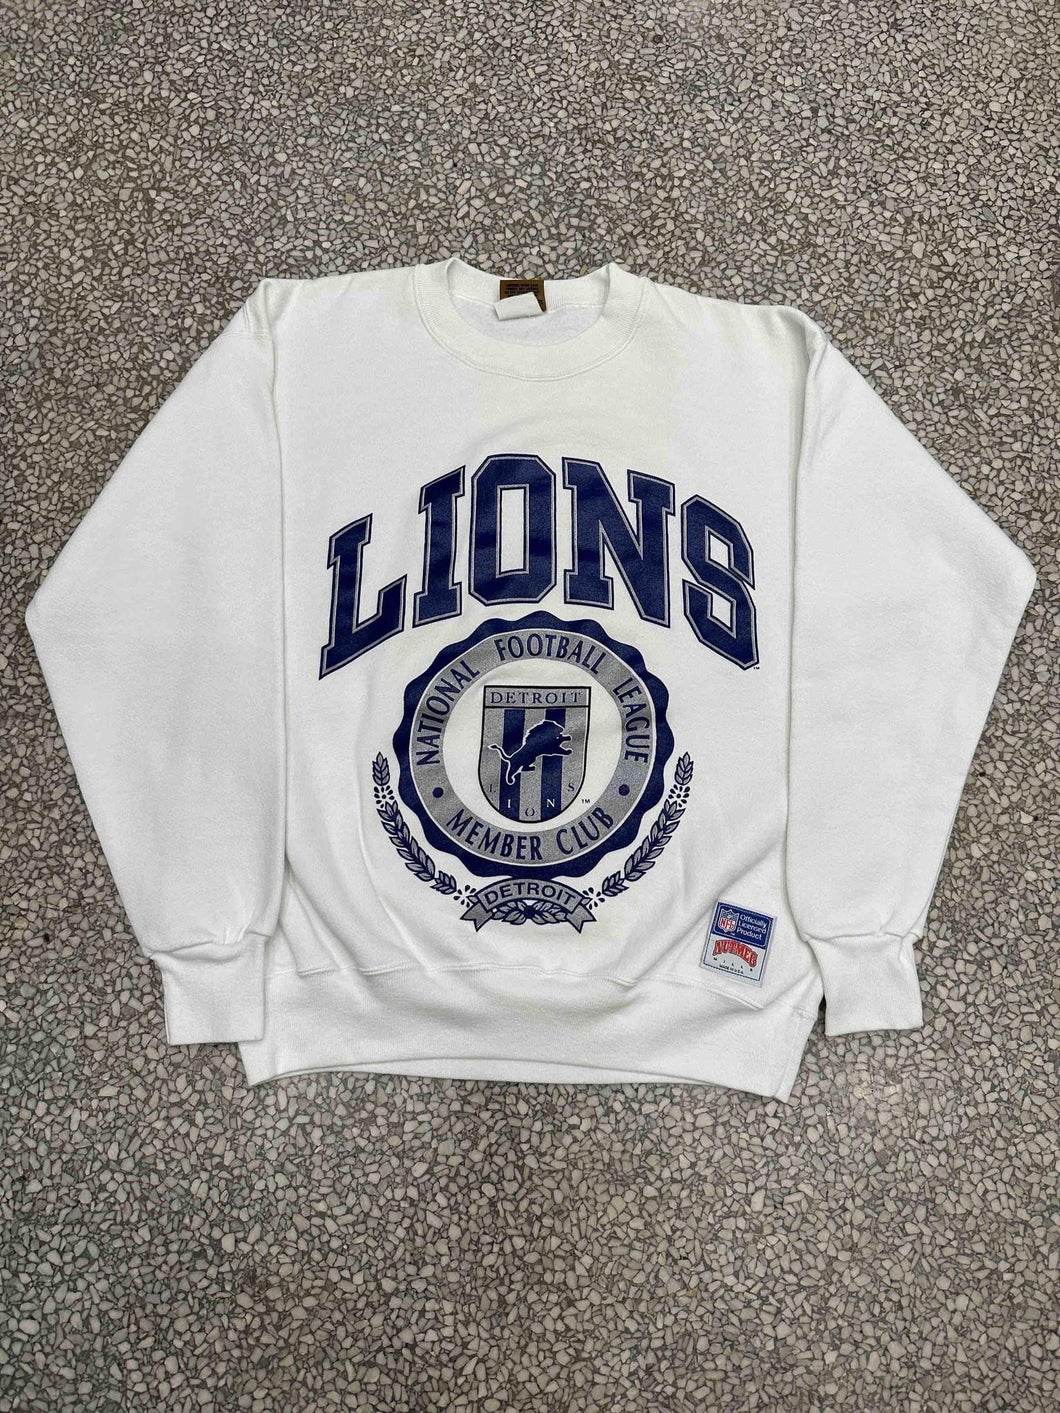 Detroit Lions Vintage 90s Member Club Crest Crewneck White ABC Vintage 